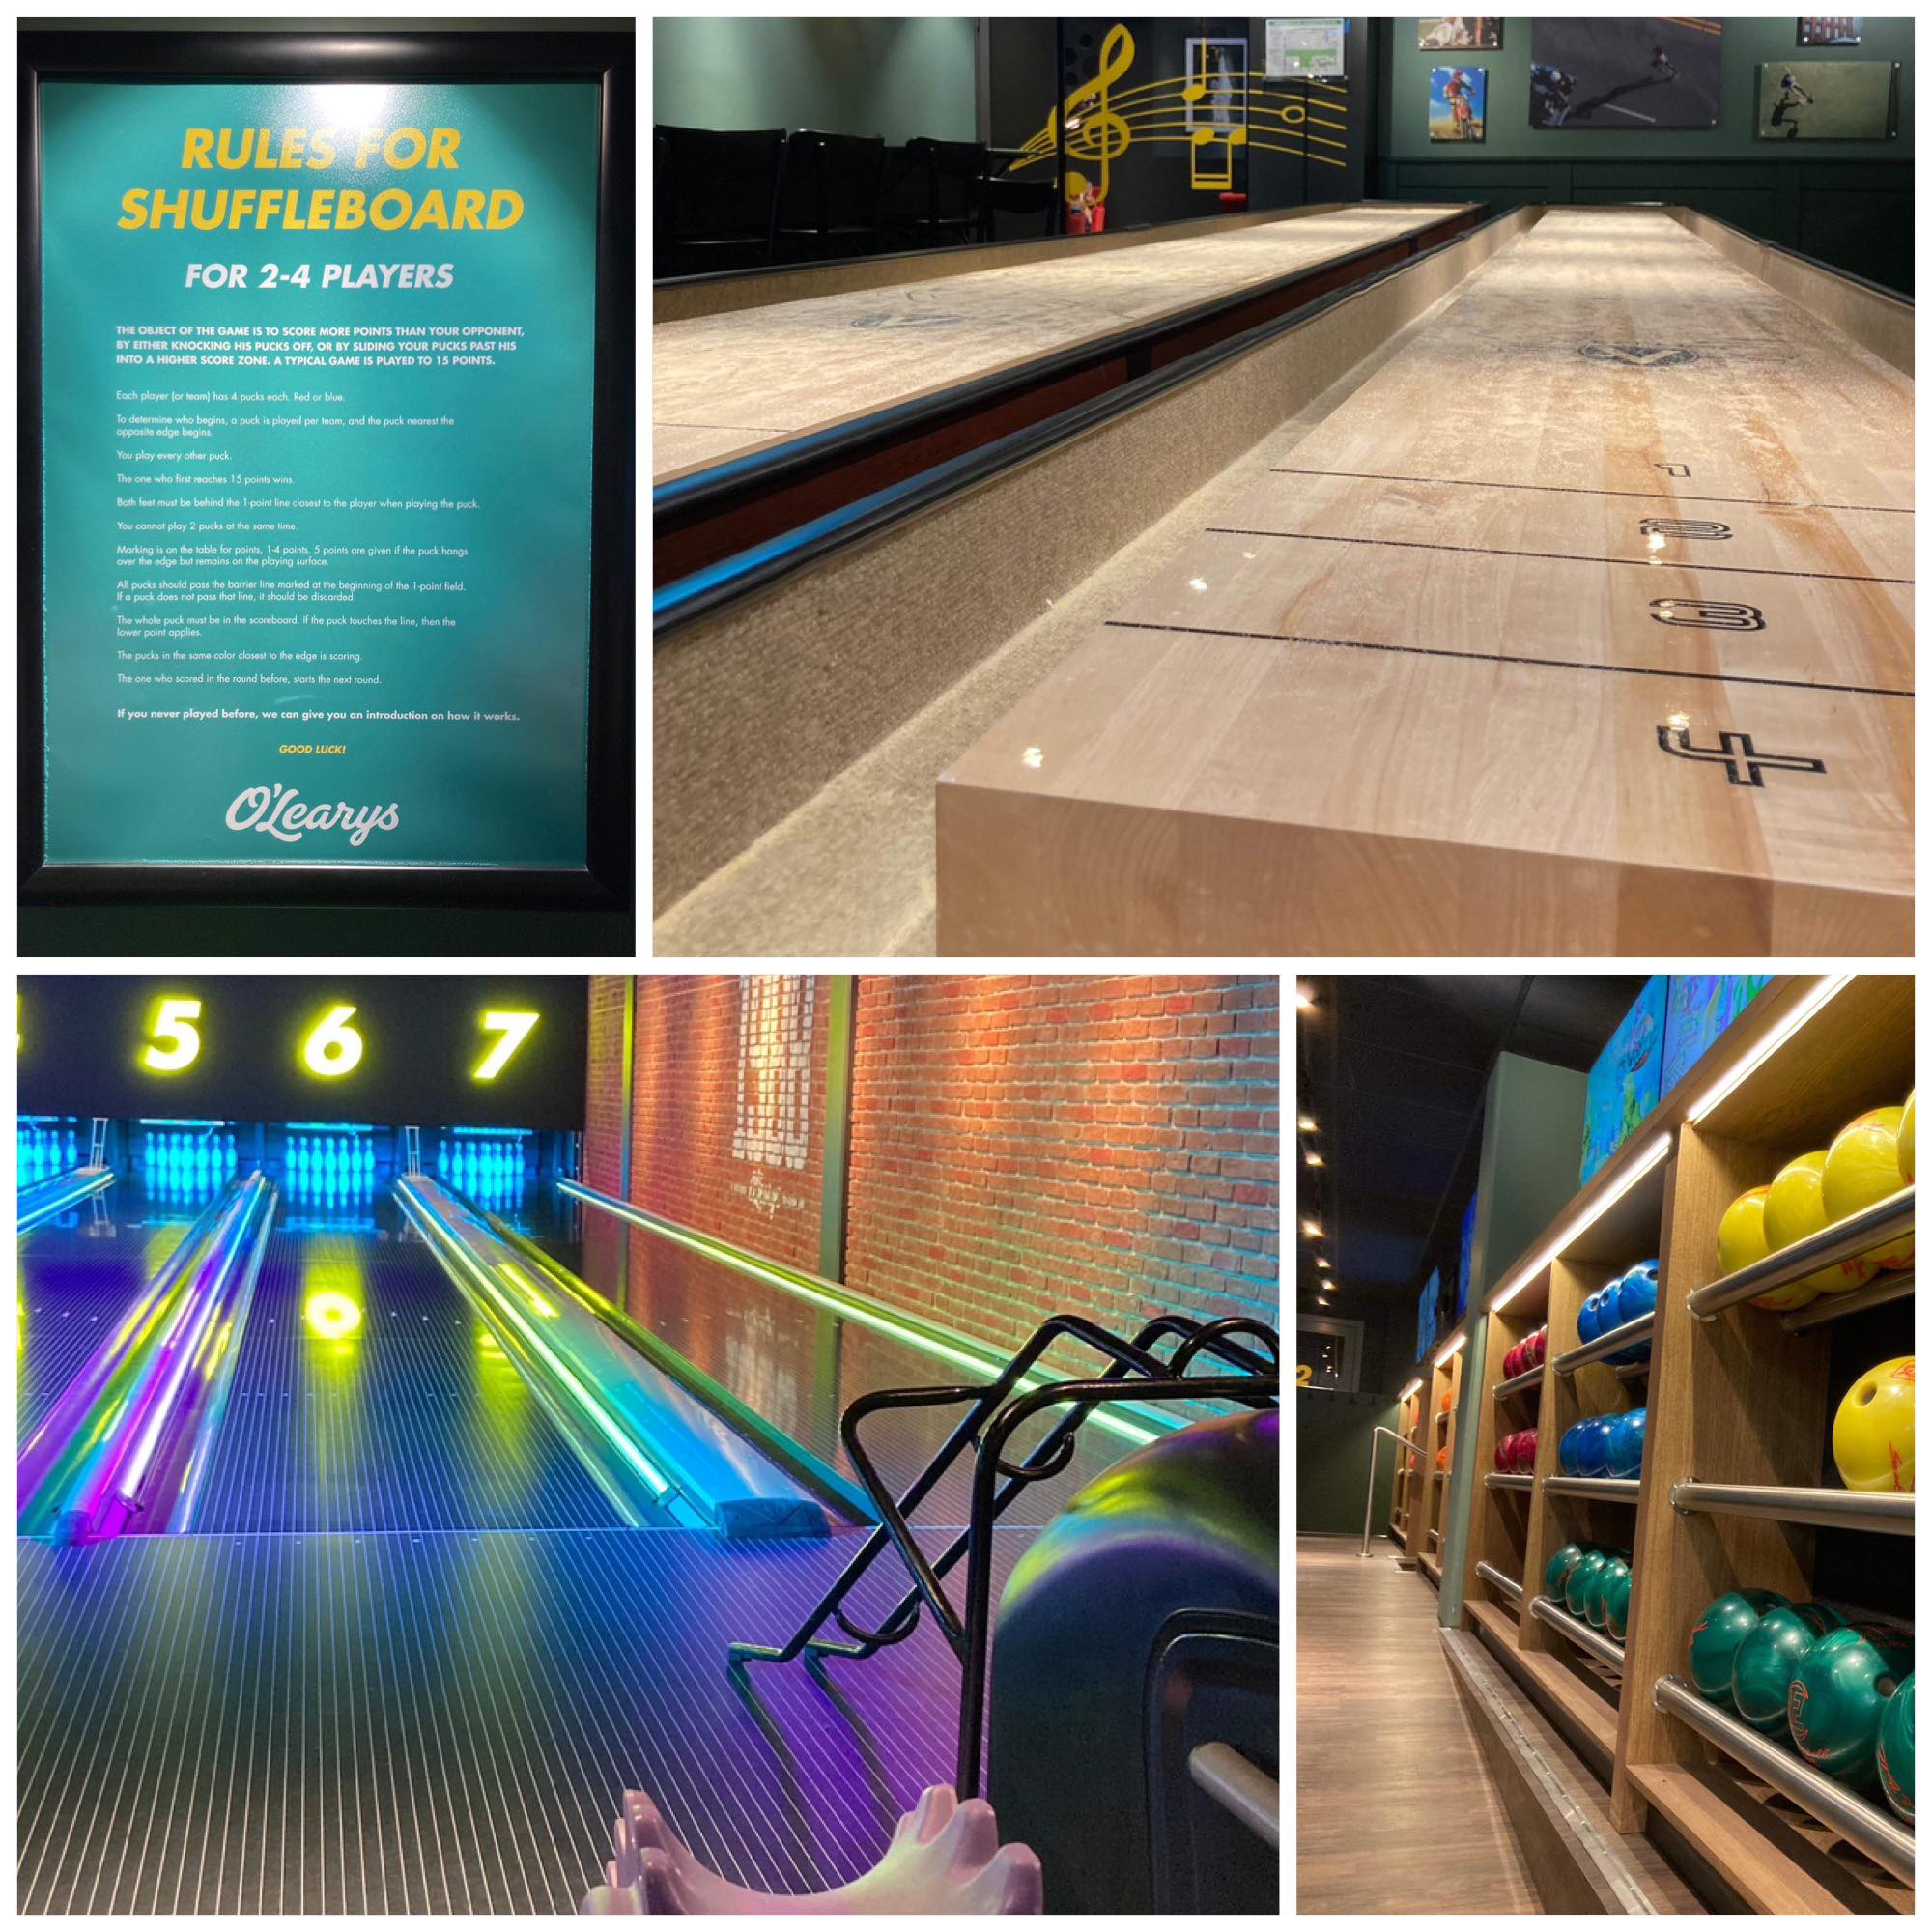 Firedelt bildecollage: to av shuffleboard og plakat med regler, to av oppstilte fargerike bowlingkuler og bowlingbane med hjelpemiddelrampe.